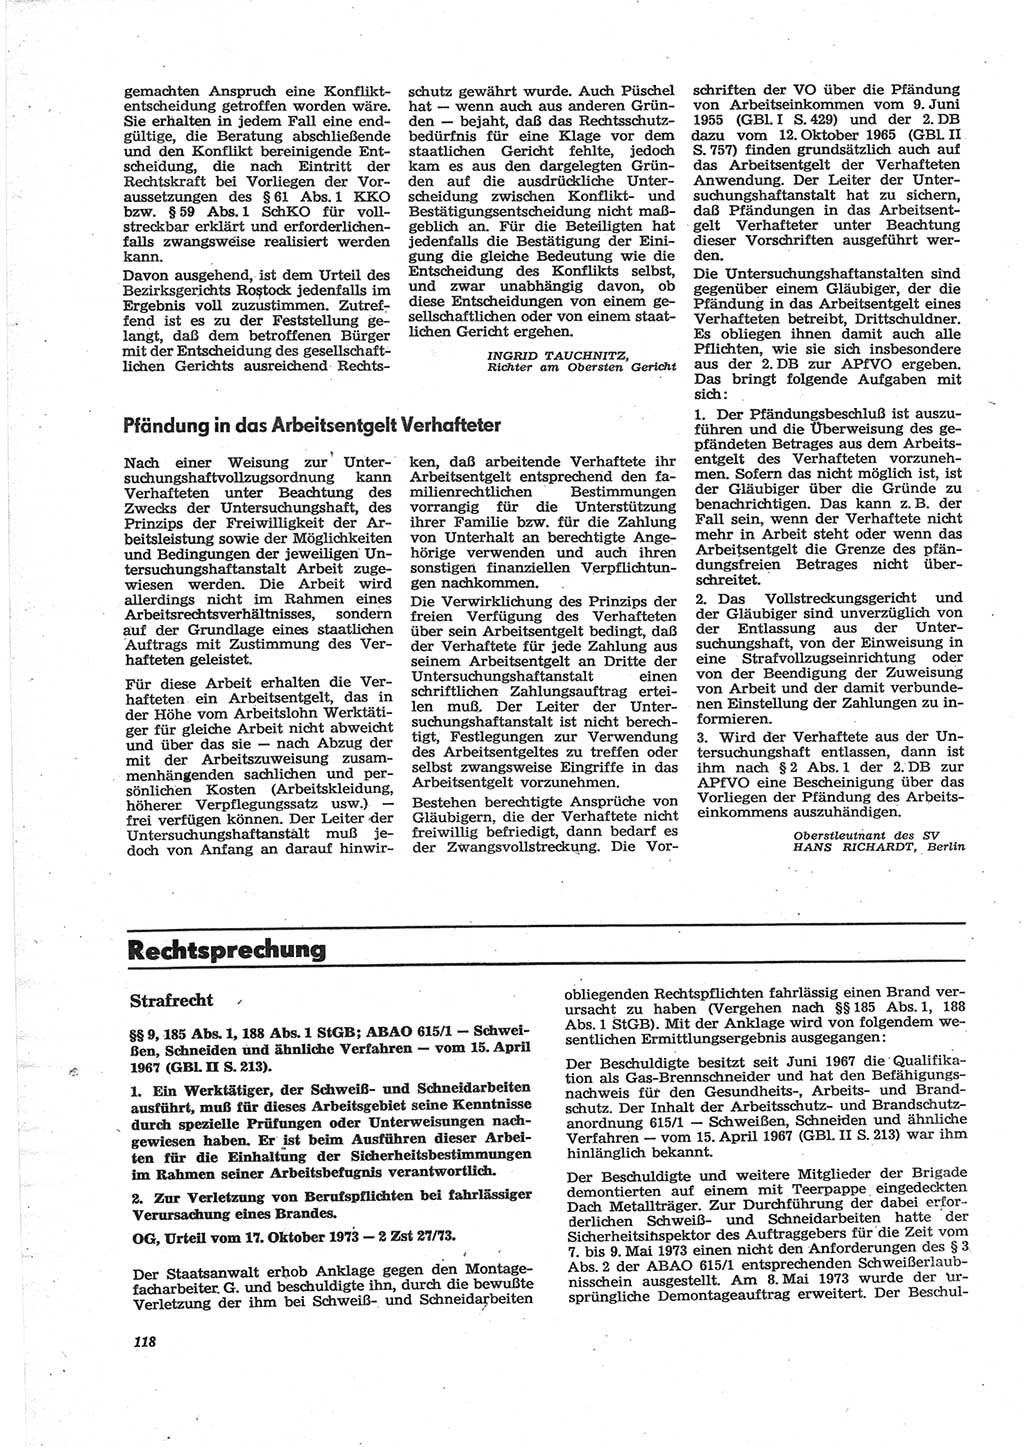 Neue Justiz (NJ), Zeitschrift für Recht und Rechtswissenschaft [Deutsche Demokratische Republik (DDR)], 28. Jahrgang 1974, Seite 118 (NJ DDR 1974, S. 118)